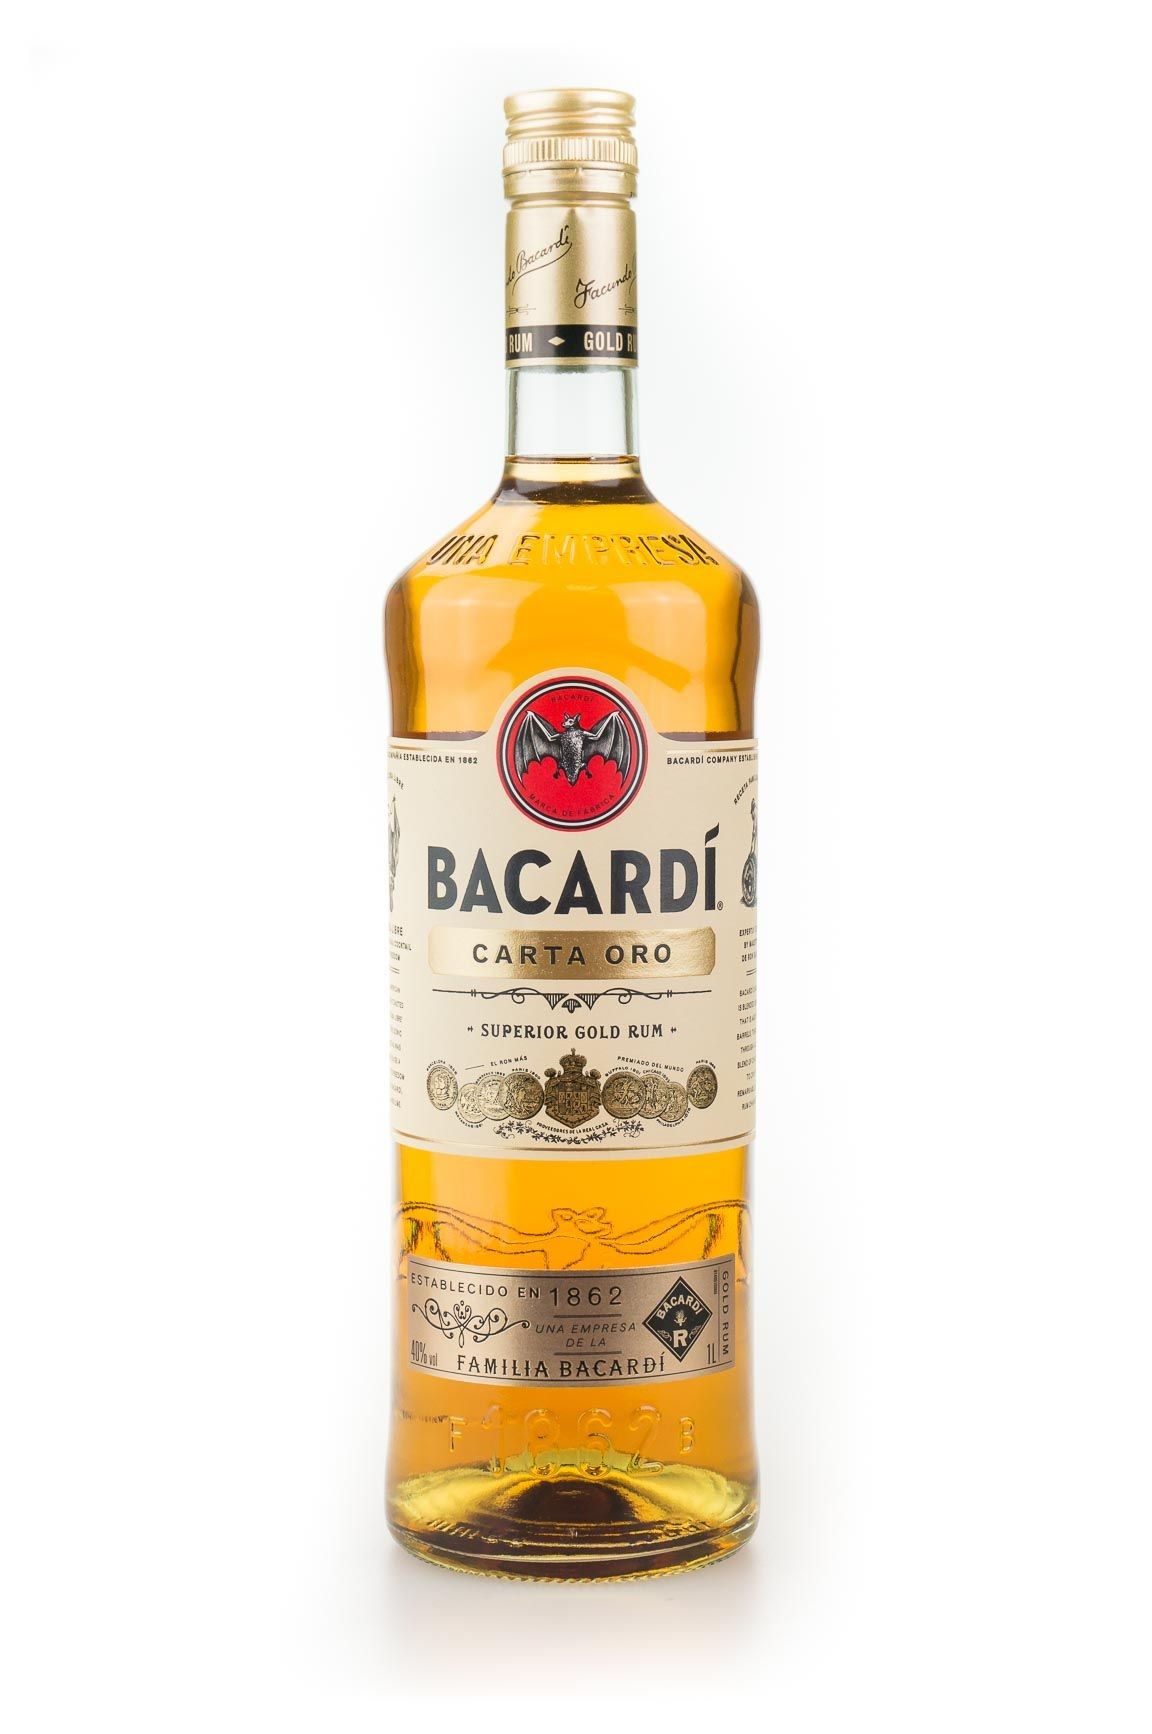 Rum bacardi superior 70cl 37.5%